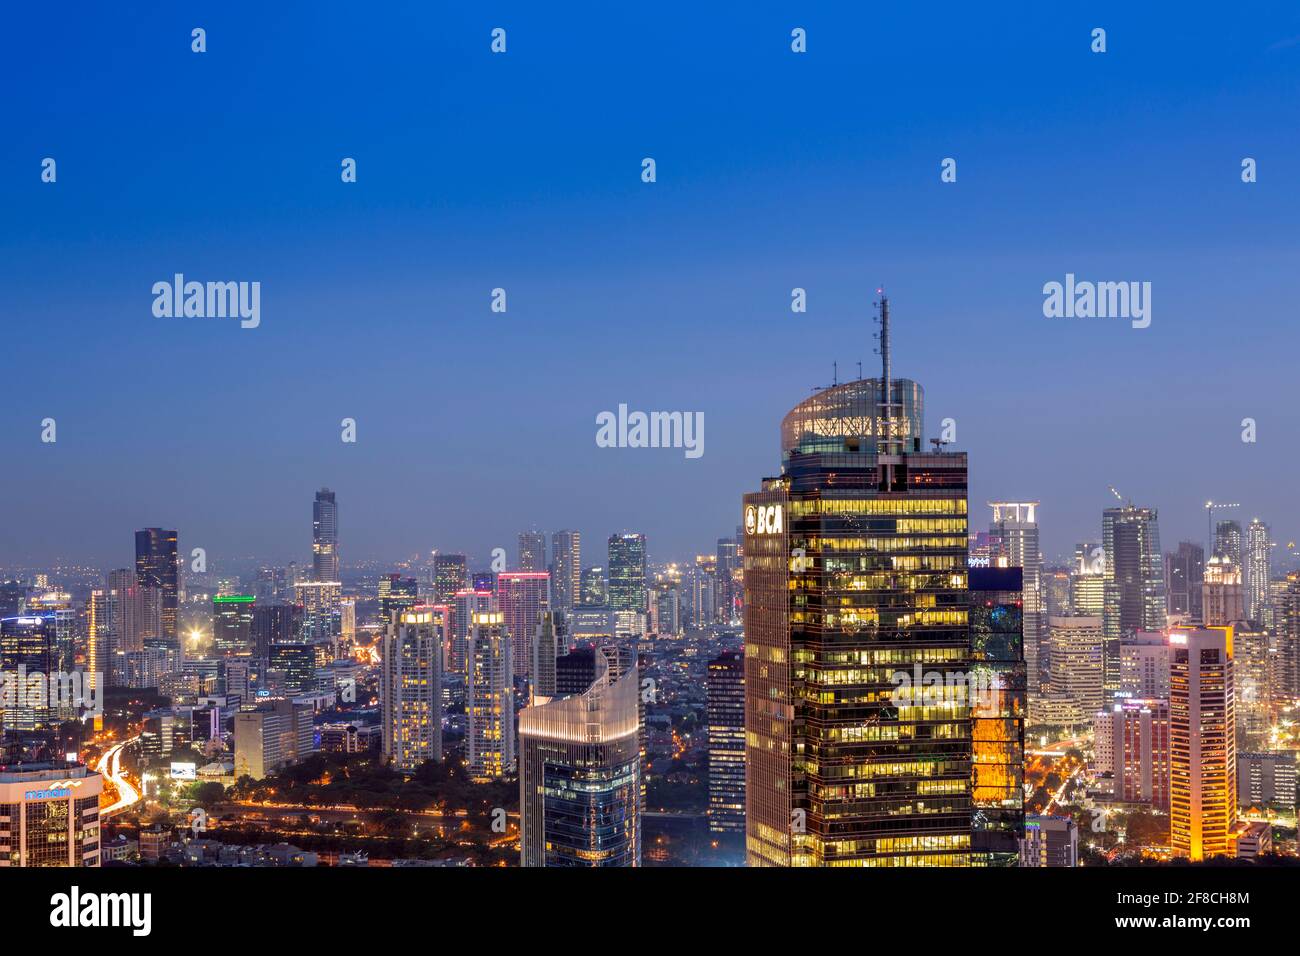 Die beleuchtete Skyline der Innenstadt von Jakarta - der Hauptstadt Indonesiens, zeigt das Central Business District, Jakarta, Indonesien Stockfoto